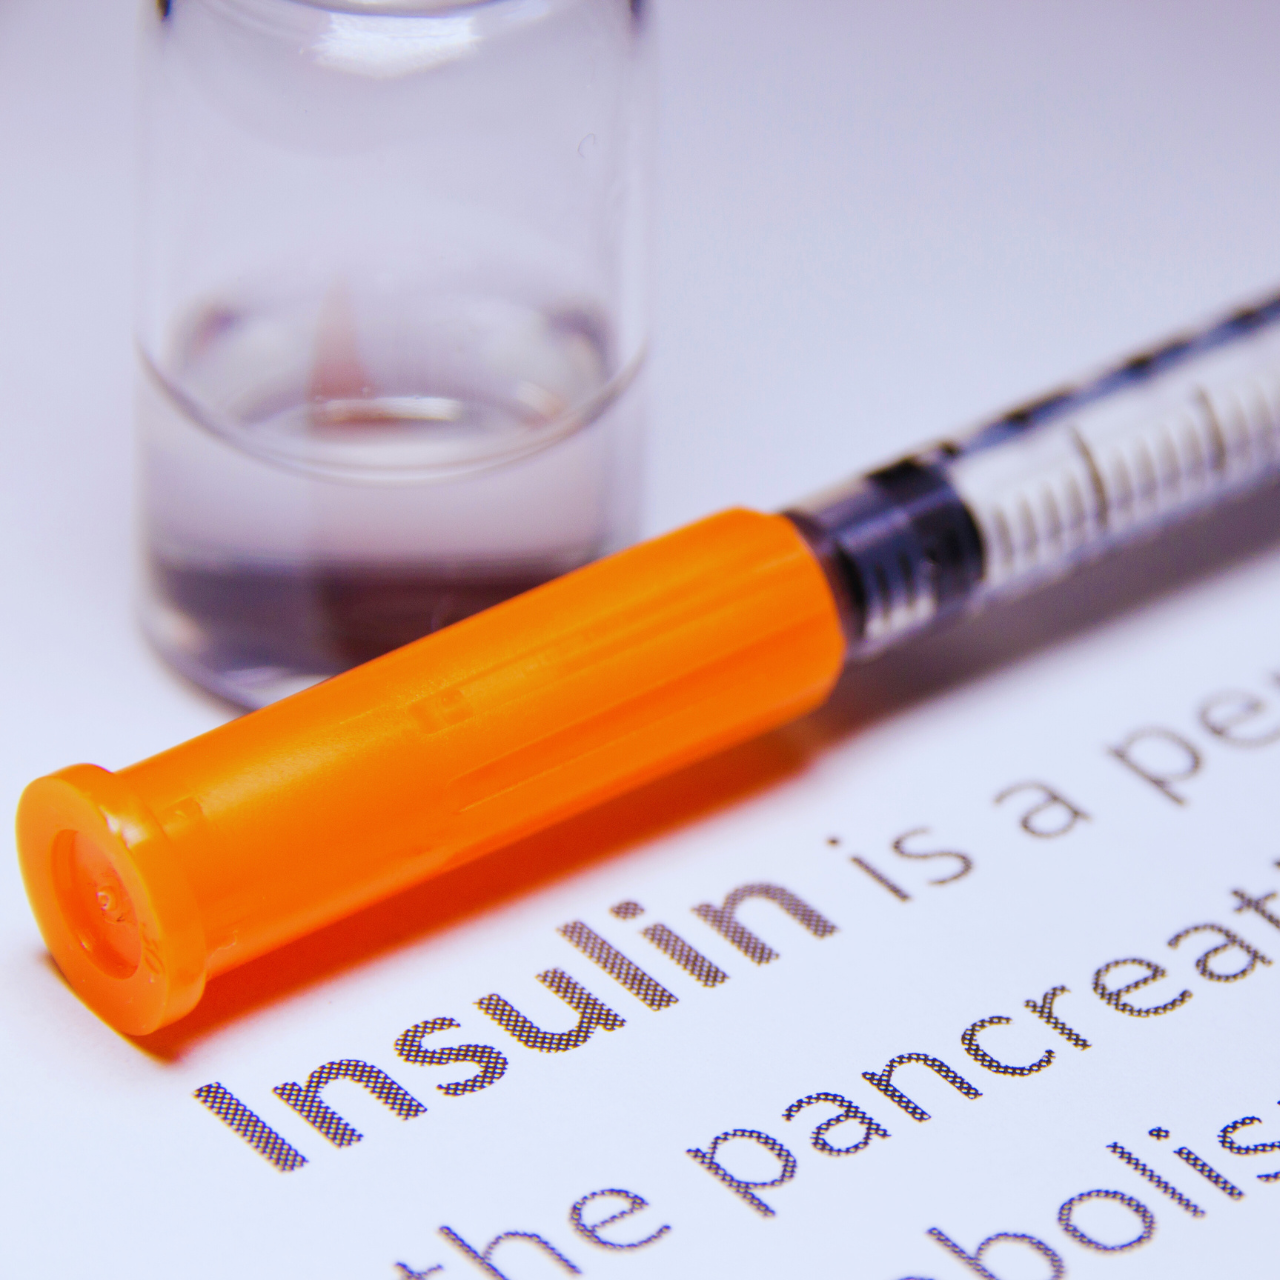 인슐린
인슐린에 대하여